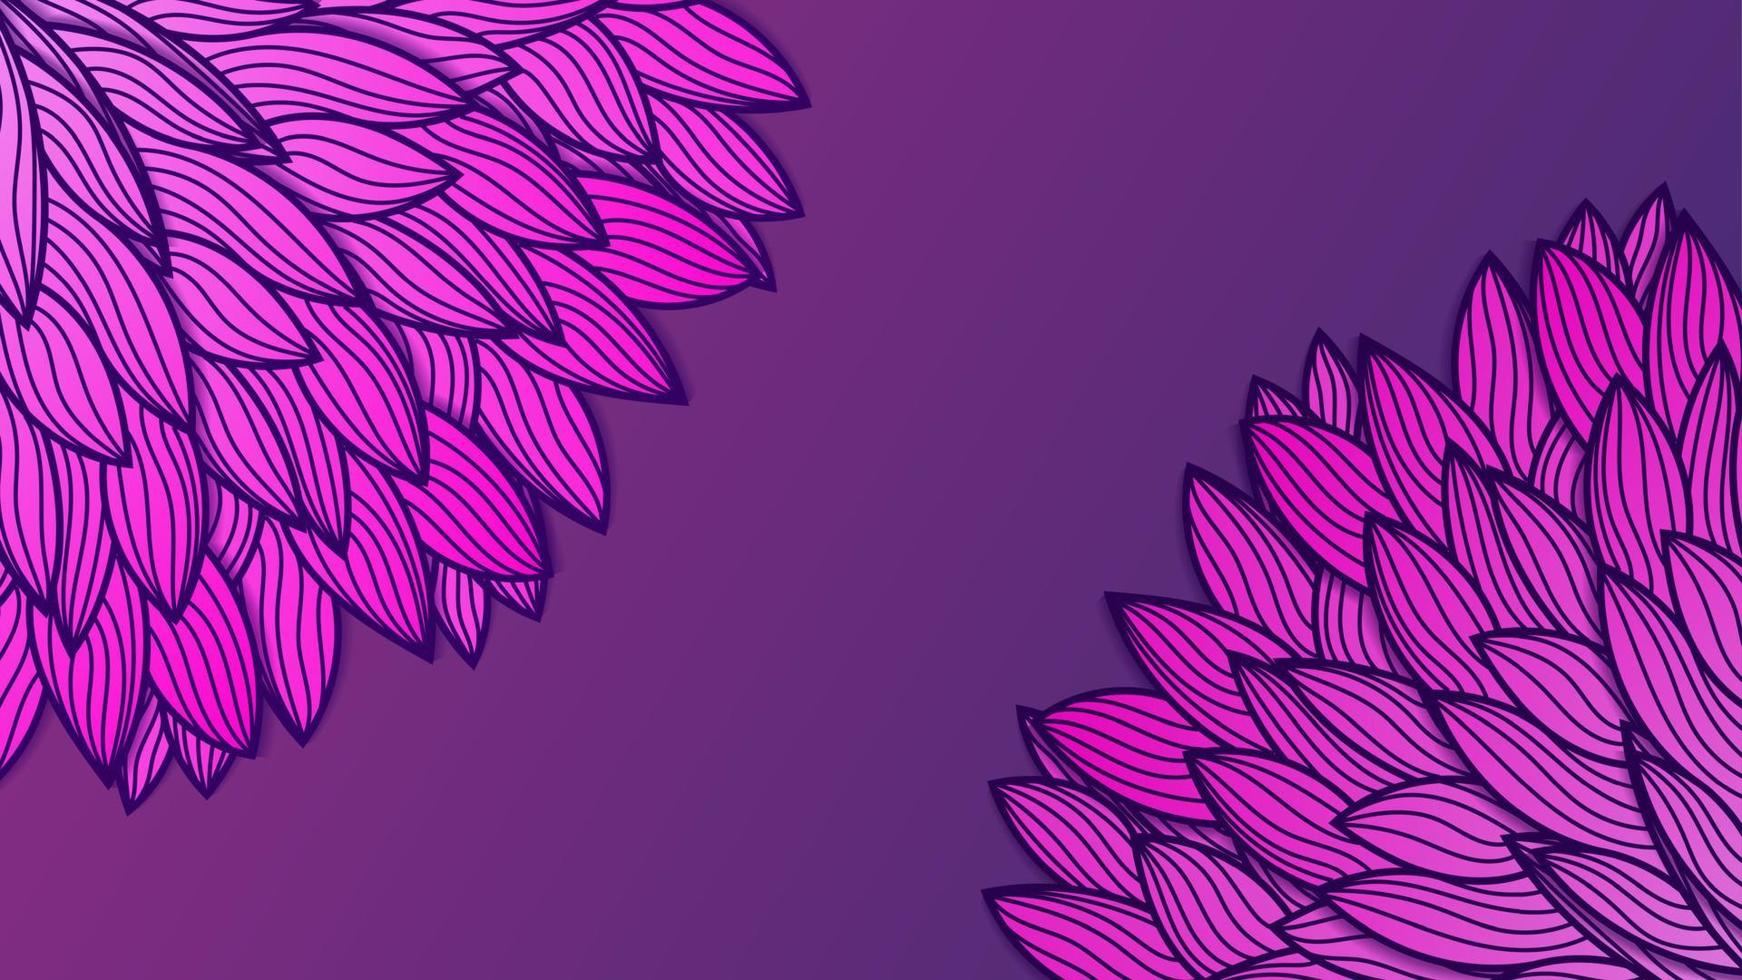 vecteur géométrique dégradé violet motif transparent avec rayures croisées fond floral. vecteur lunaire violet et rose texture transparente avec fond de fleurs abstraites avec graphique dessiné à la main